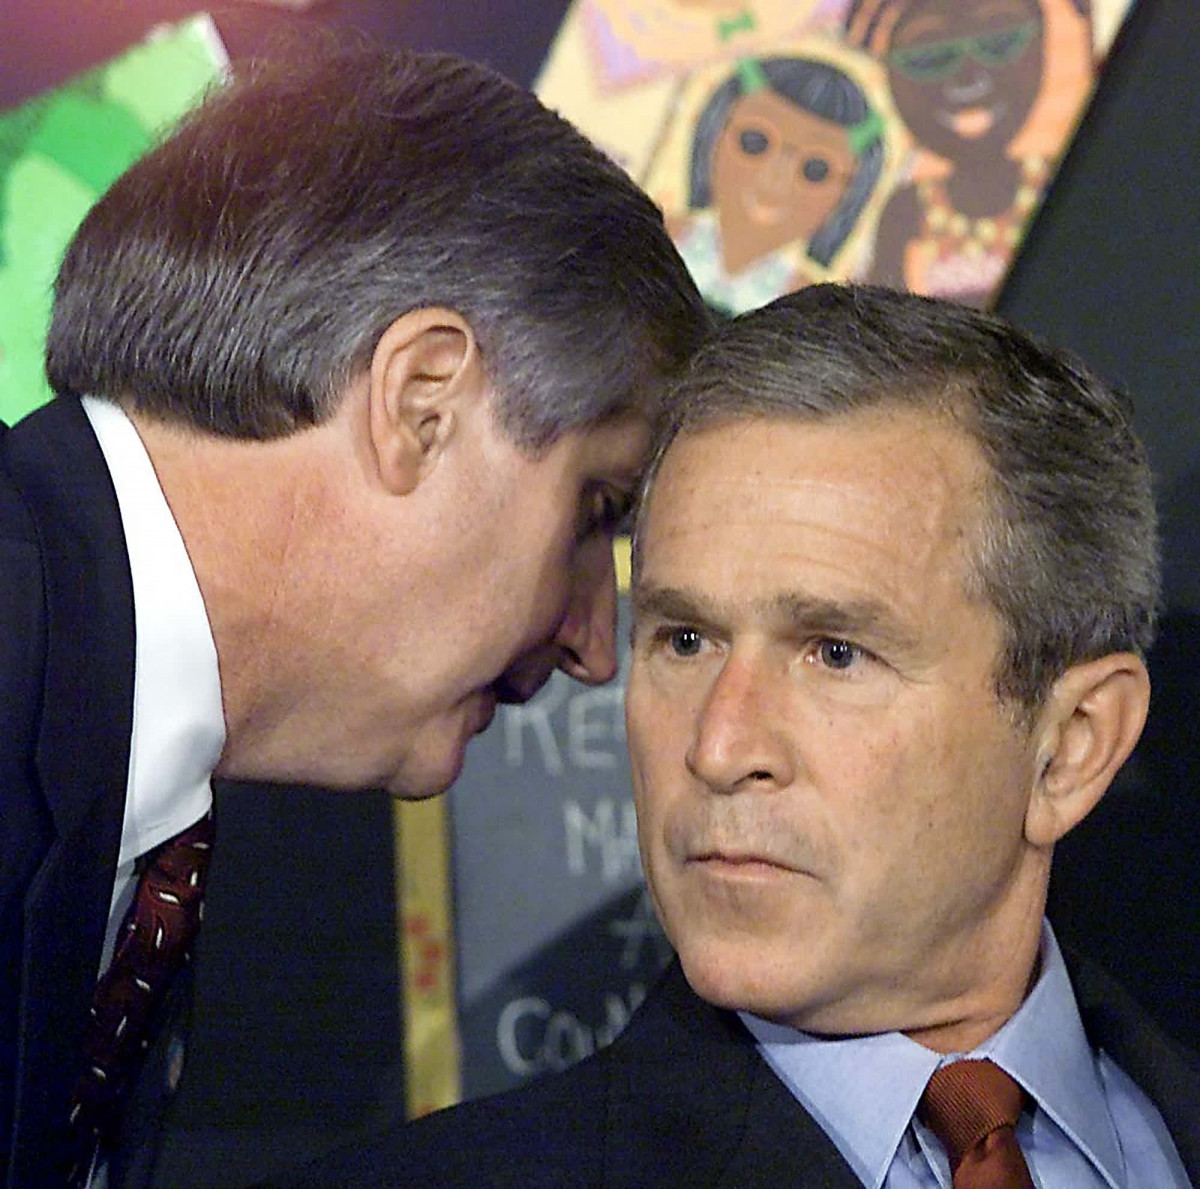 Chánh văn phòng Nhà Trắng Andrew Card trao đổi với Tổng thống George W. Bush khi ông Bush đi thăm một trường tiểu học ở Sarasota, Florida sáng 11/9/2001. Ảnh: Getty